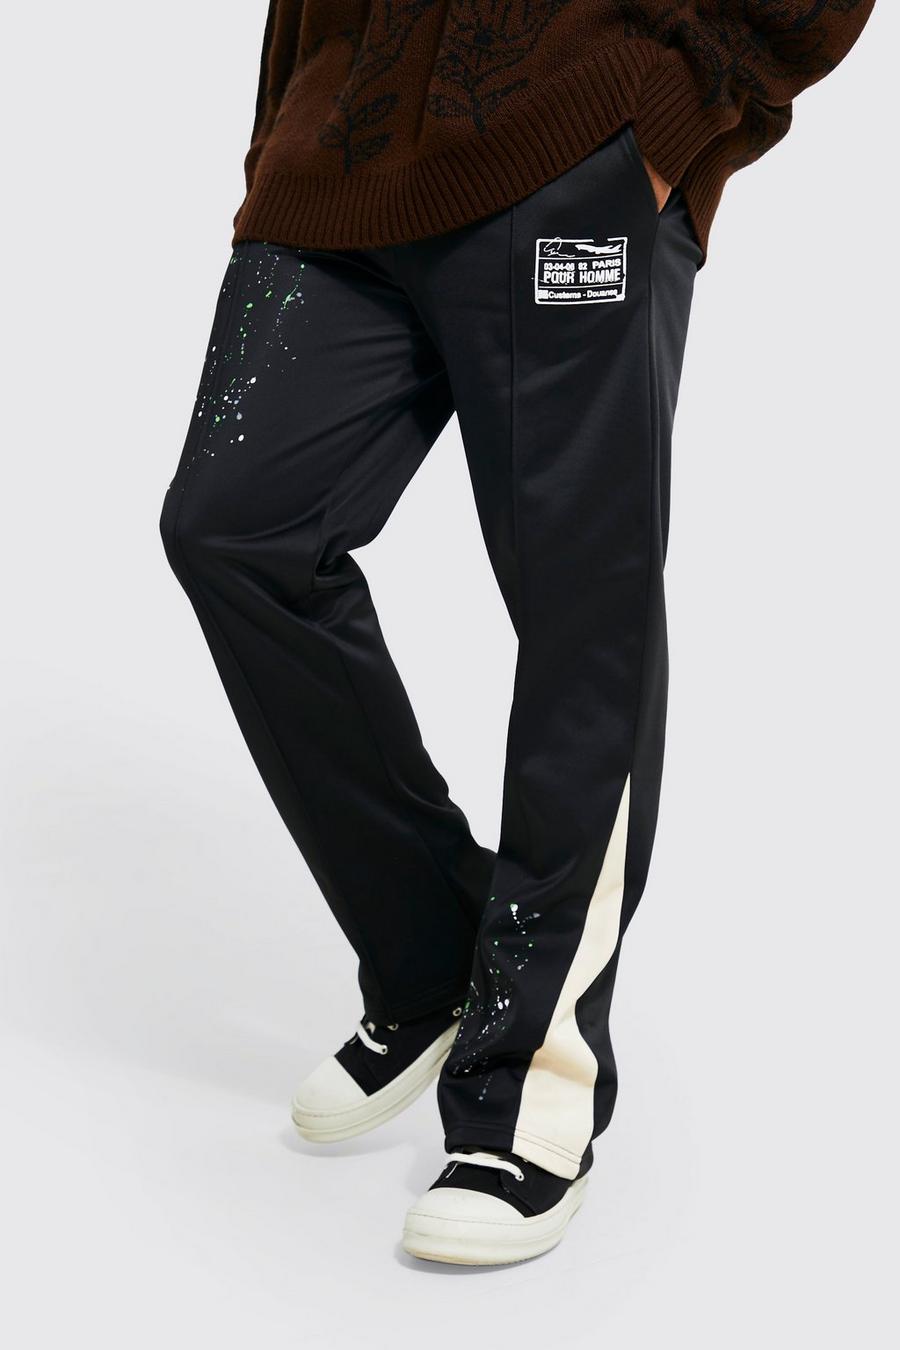 Pantaloni tuta Regular Fit con inserti e grafica, Black